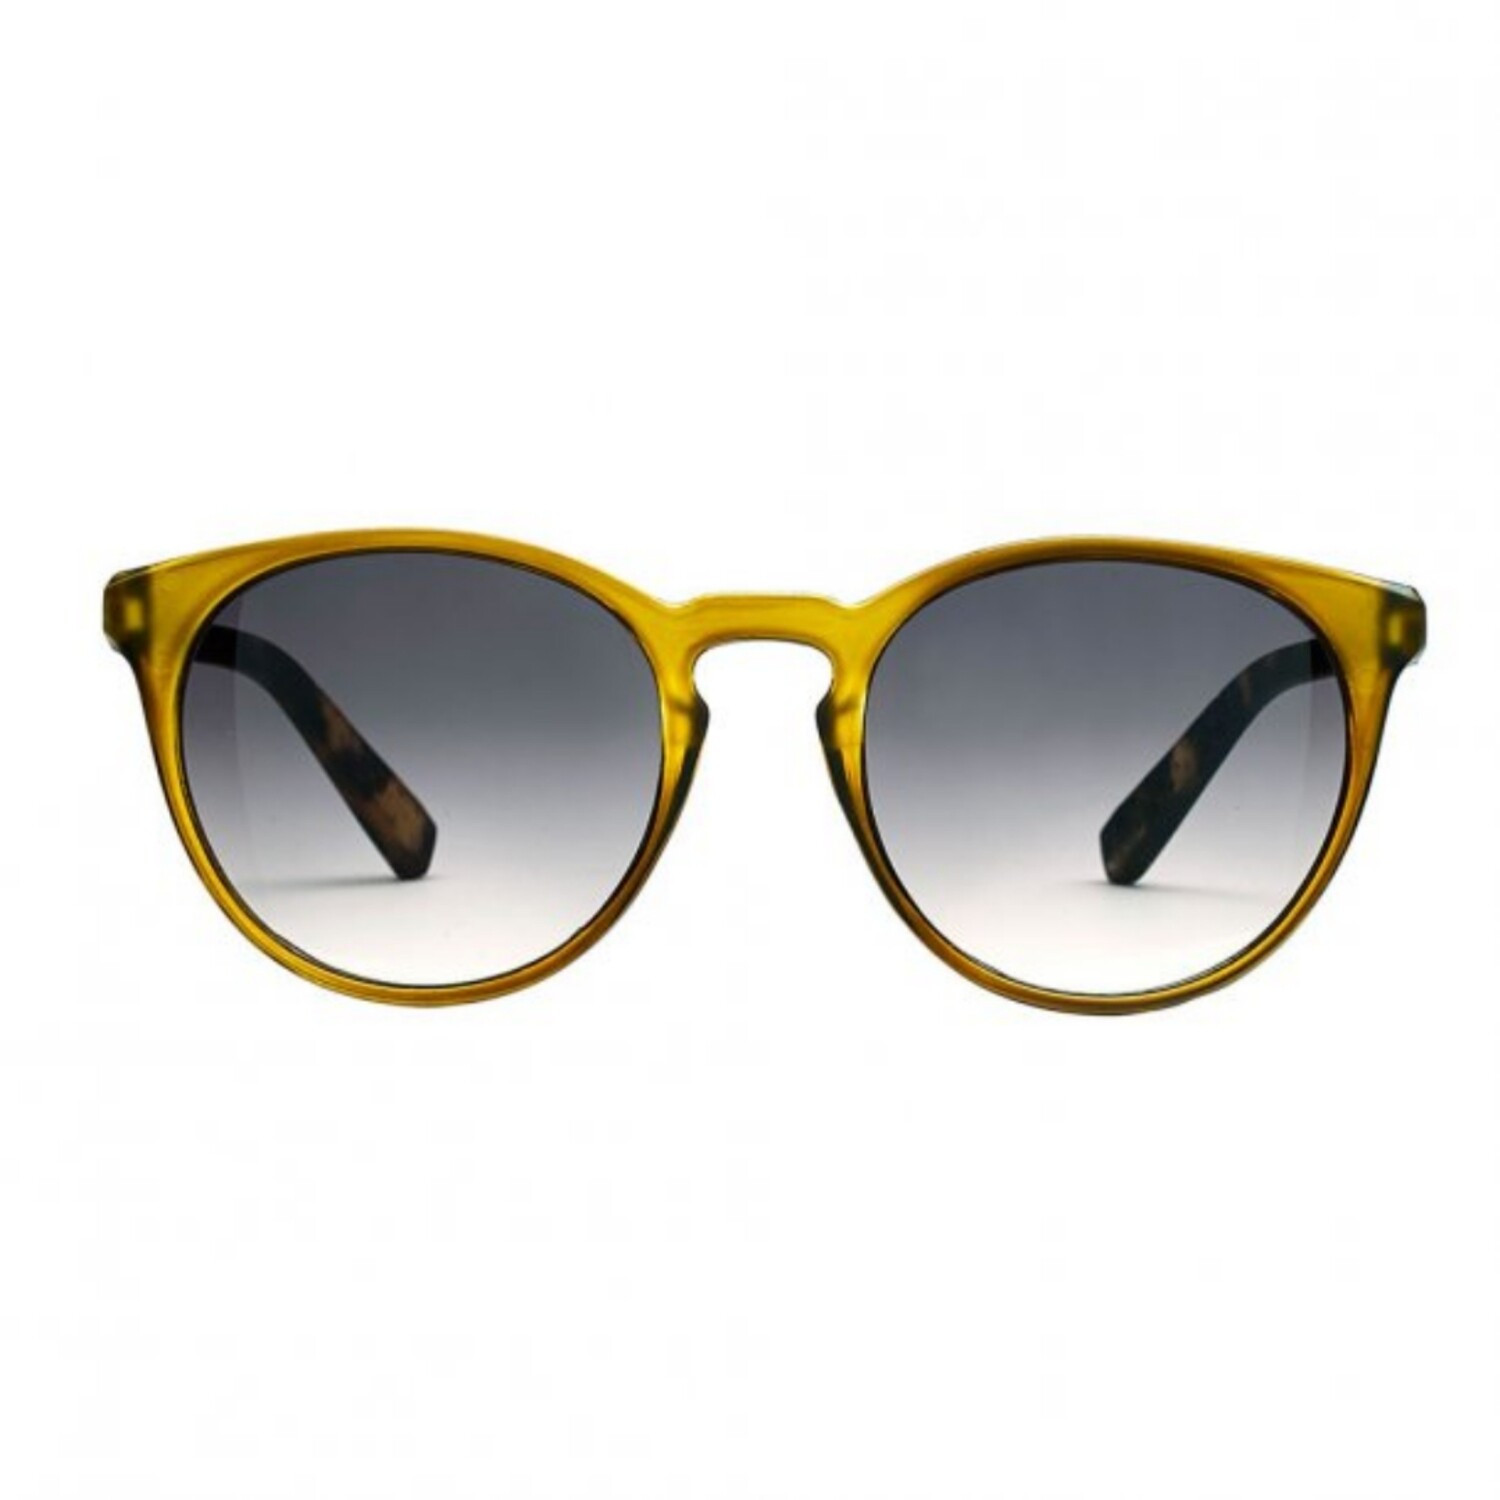 Слънчеви очила "Torino Olive"
Hart&Holm